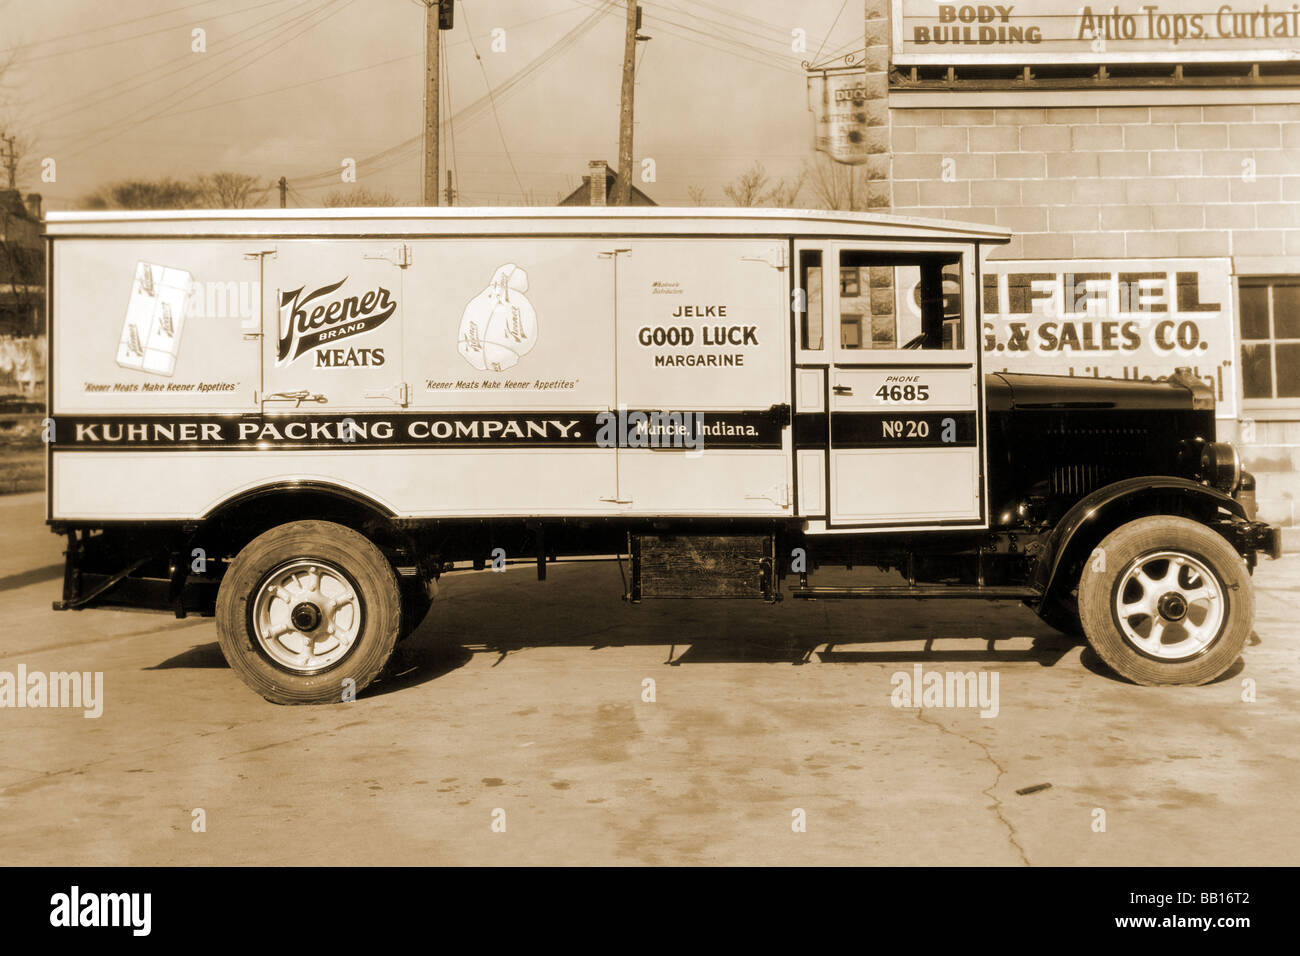 Kuhner società di imballaggio,Muncie, Indiana per la consegna del carrello più aspra salumi Foto Stock